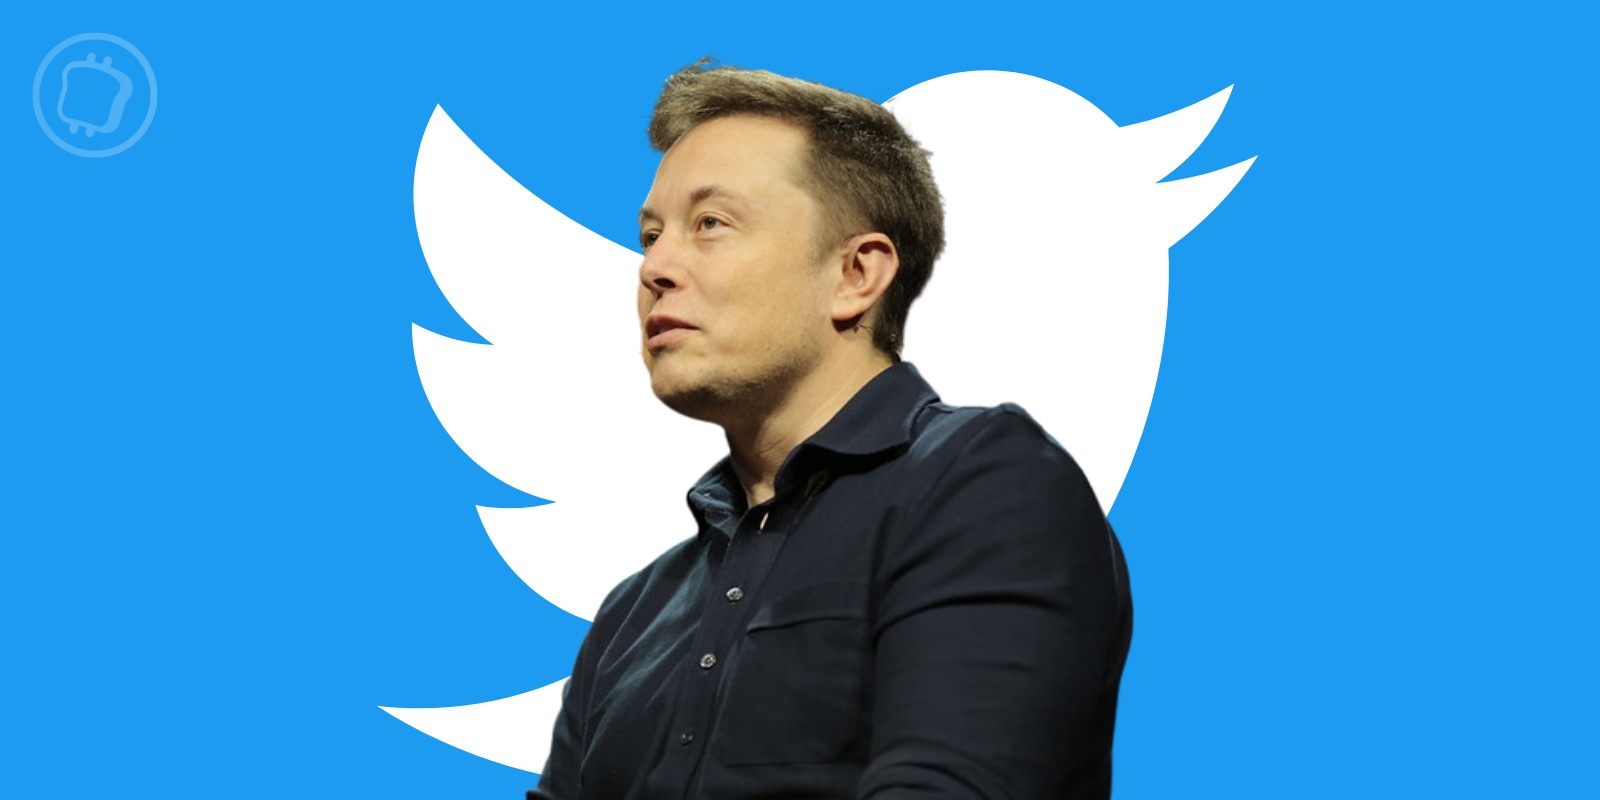 Paiements en cryptomonnaies sur Twitter – Quels sont les plans d’Elon Musk ?